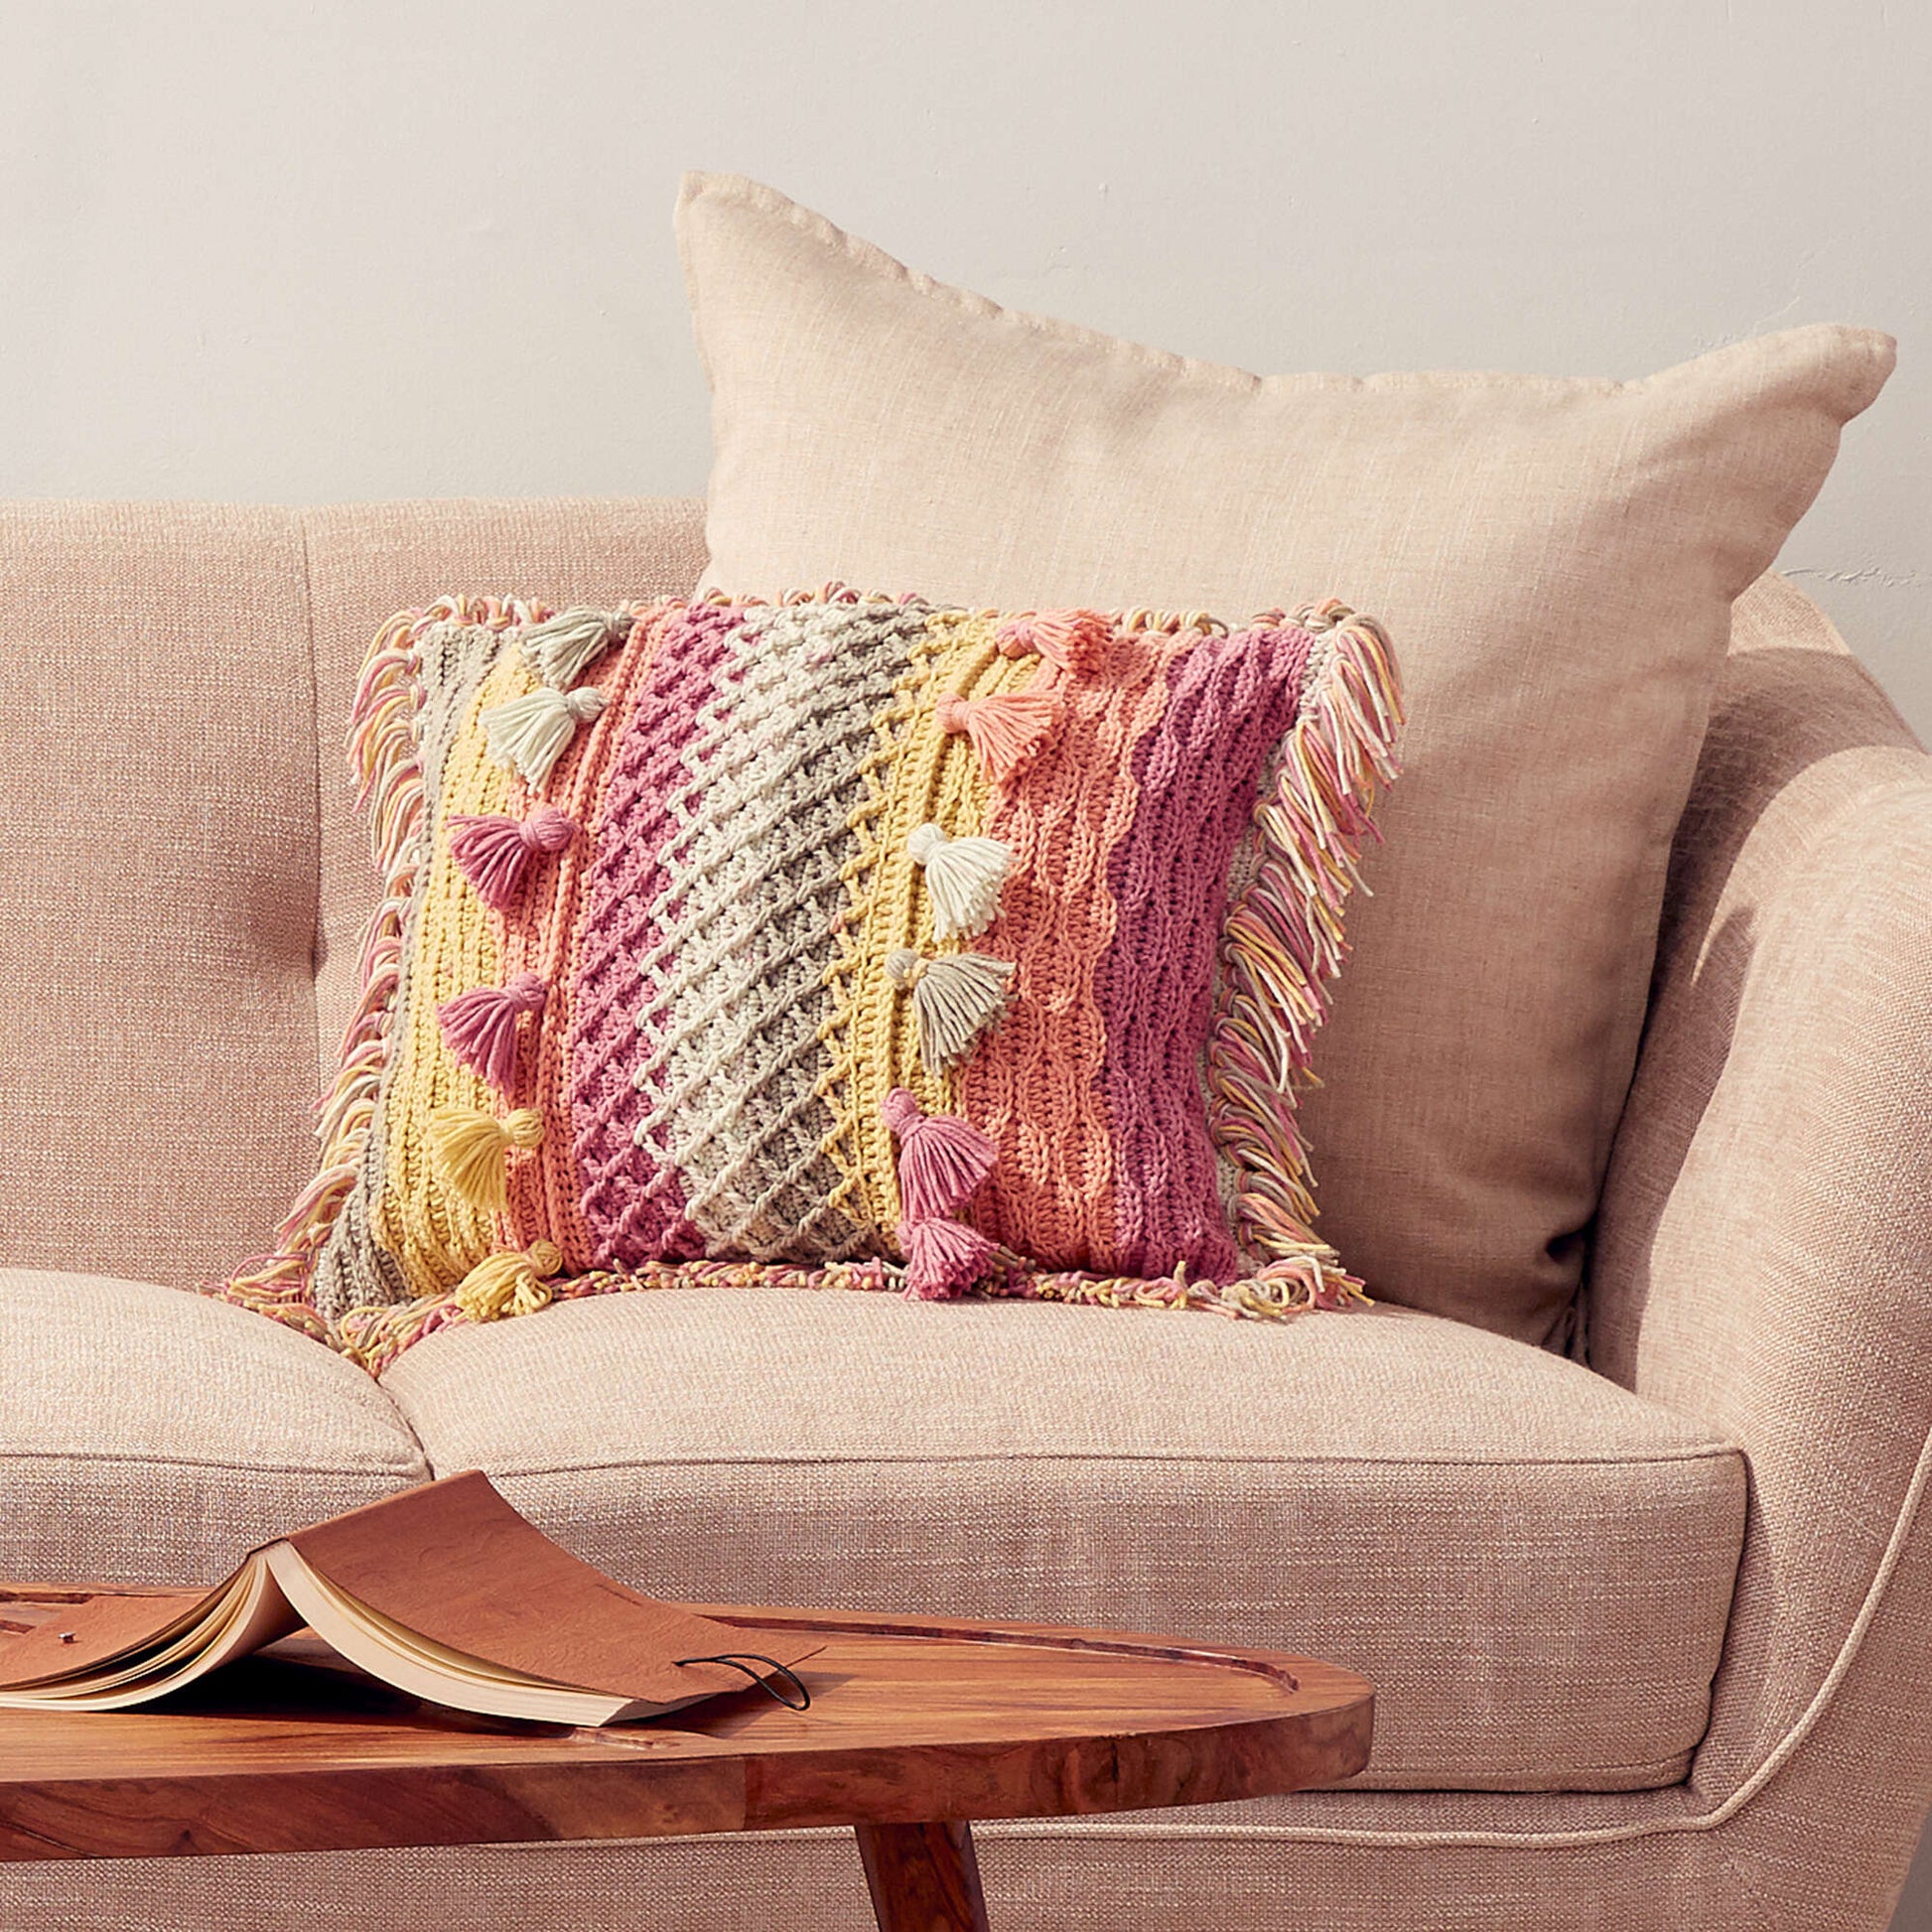 Boho Crochet Pillow Patterns - First The Coffee Crochet